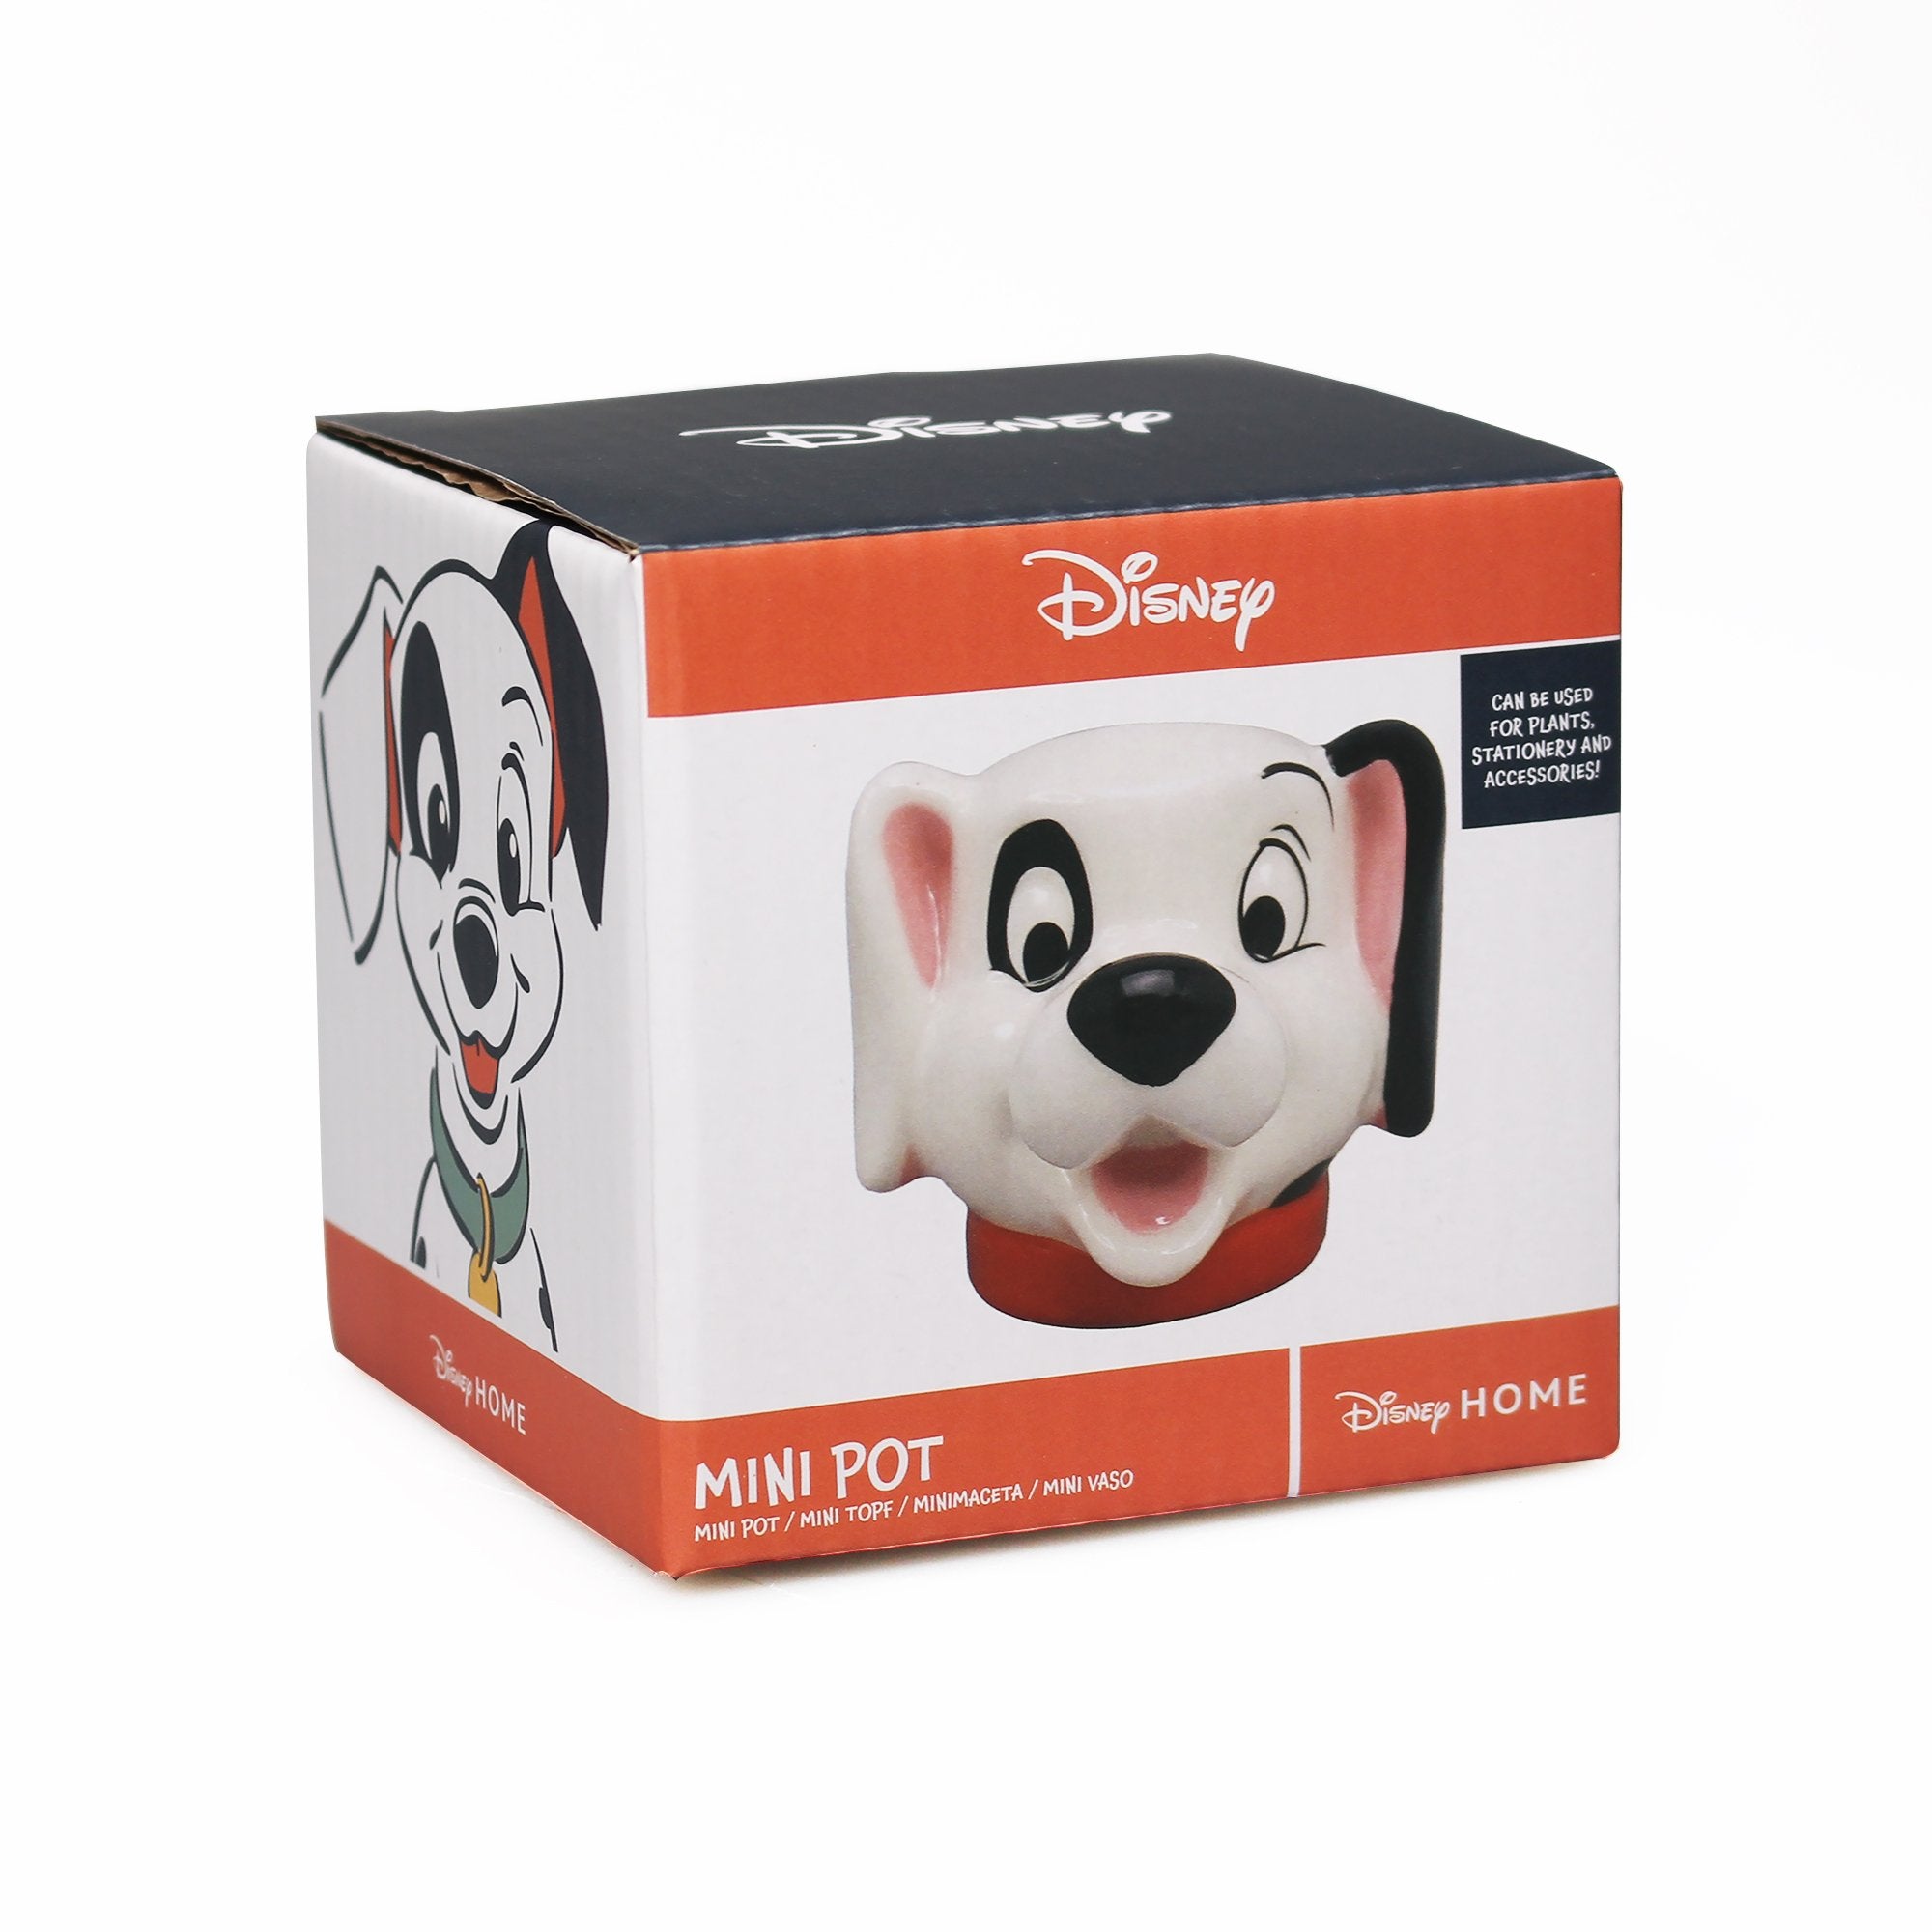 Pot Shaped Small Boxed - Disney 101 Dalmatians